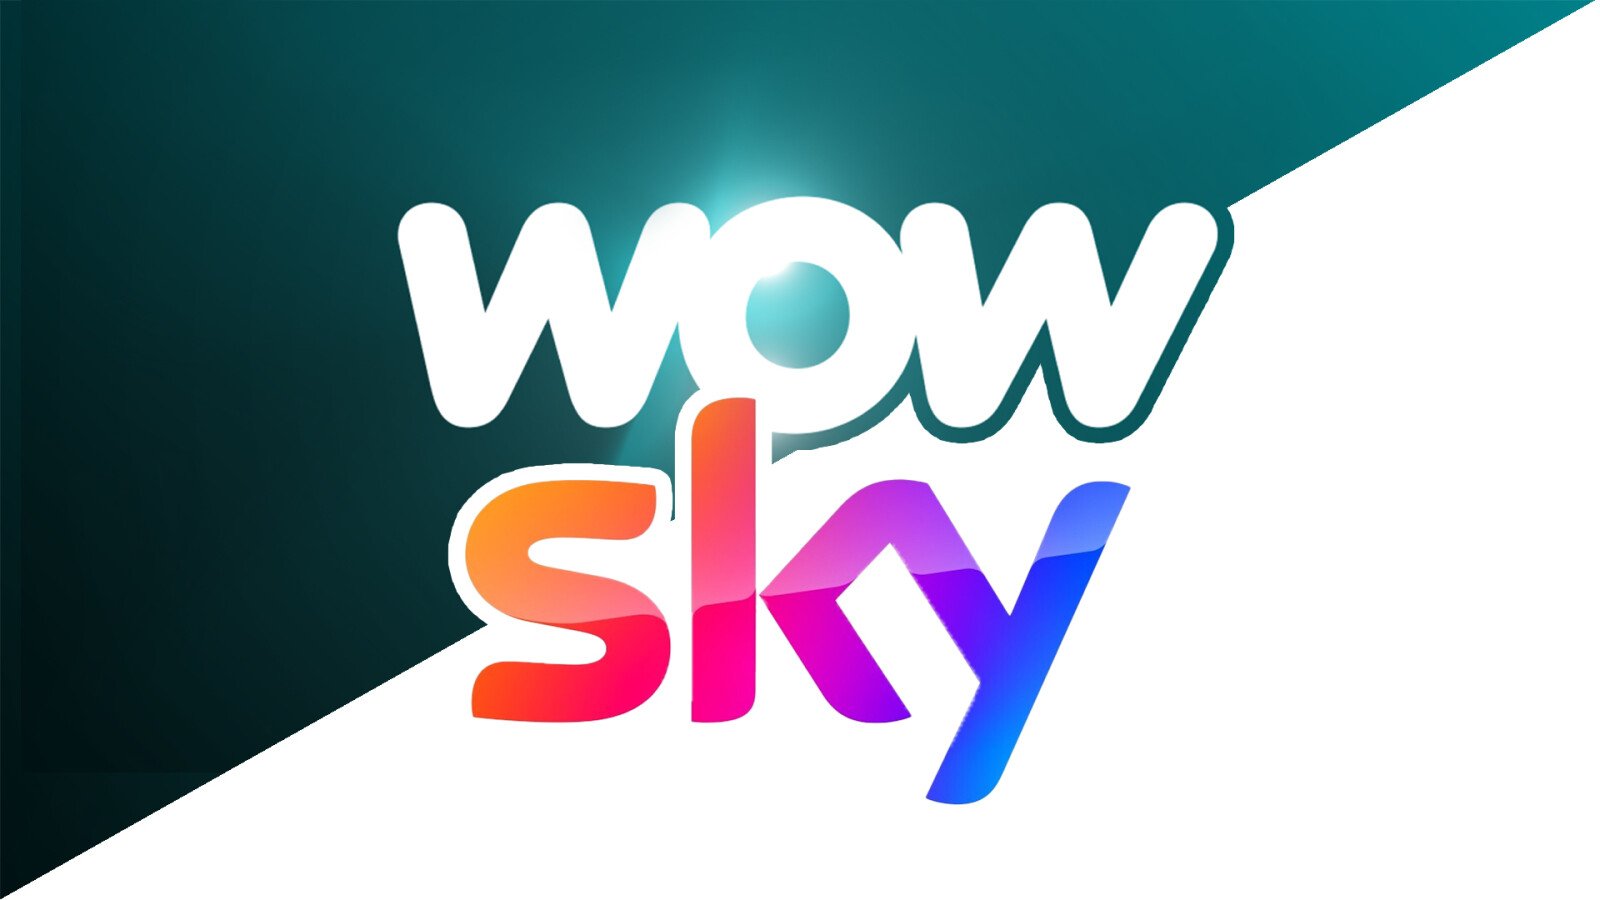 Wow und Sky Go im Ausland streamen: So seht ihr die Sky-Streamingdienste auch ganz bequem im Urlaub